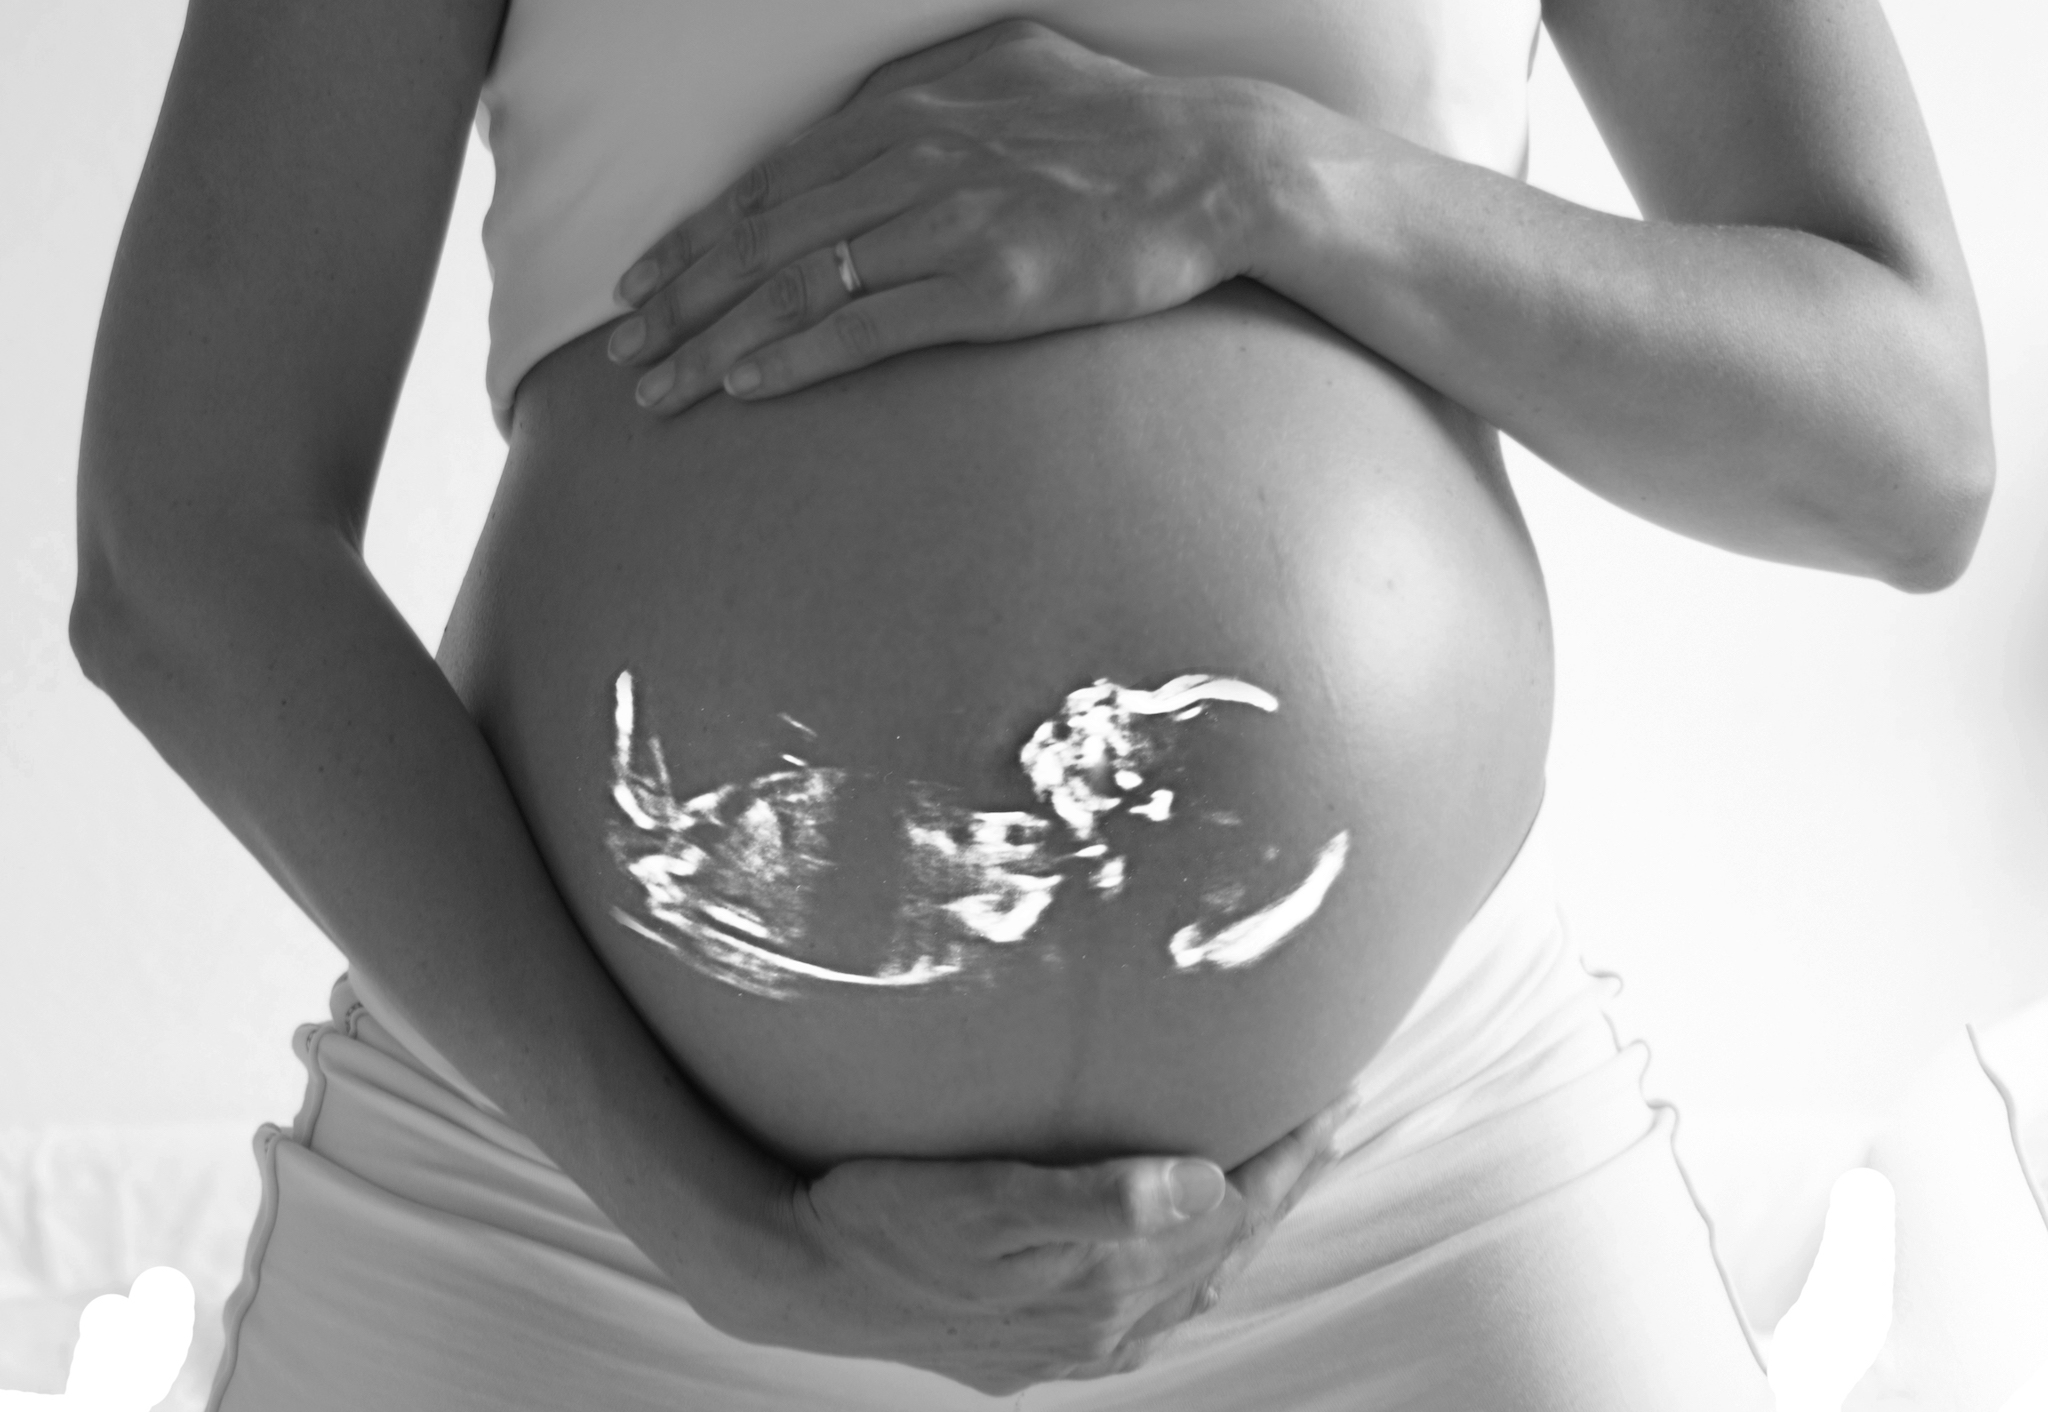 ciąża po poronieniu